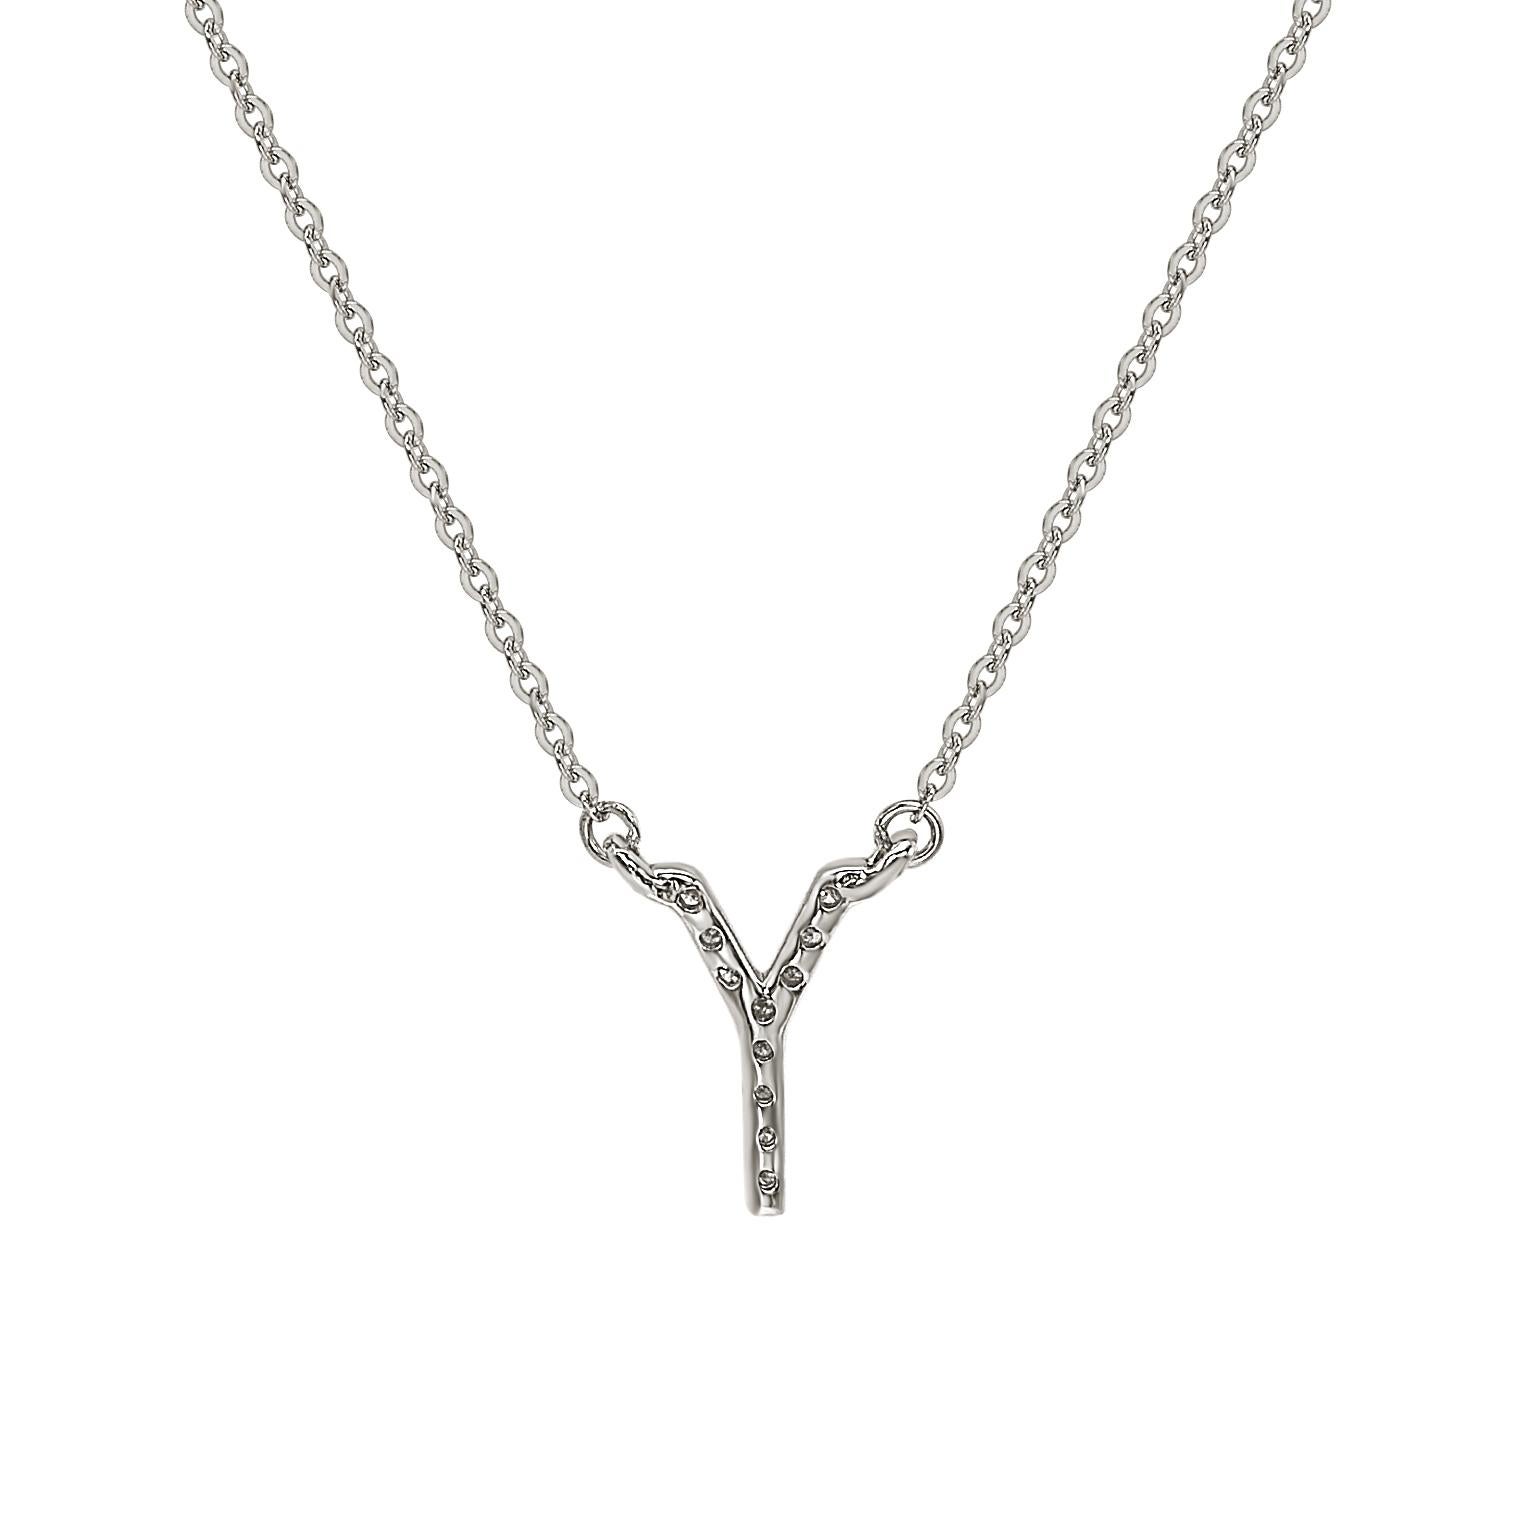 Diese atemberaubende, personalisierte Suzy Levian Buchstabenkette besteht aus natürlichen Diamanten, die von Hand in 14-karätiges Weißgold gefasst wurden. Es ist das perfekte individuelle Geschenk, um jemandem mitzuteilen, dass man an ihn oder sie